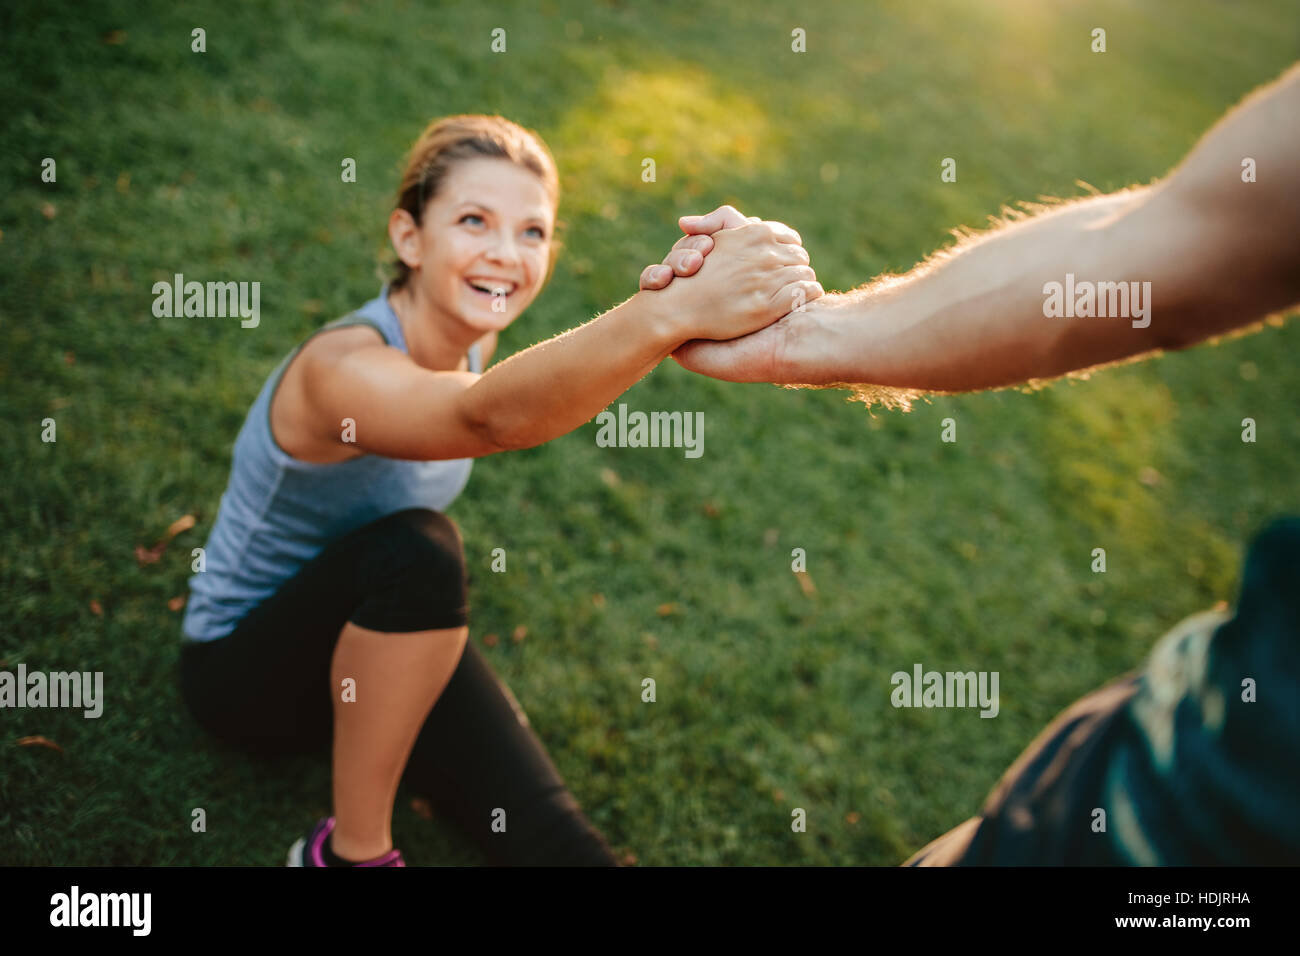 L'homme d'aider son amie à se concentrer sur les mains. Couple exercising in park. Banque D'Images